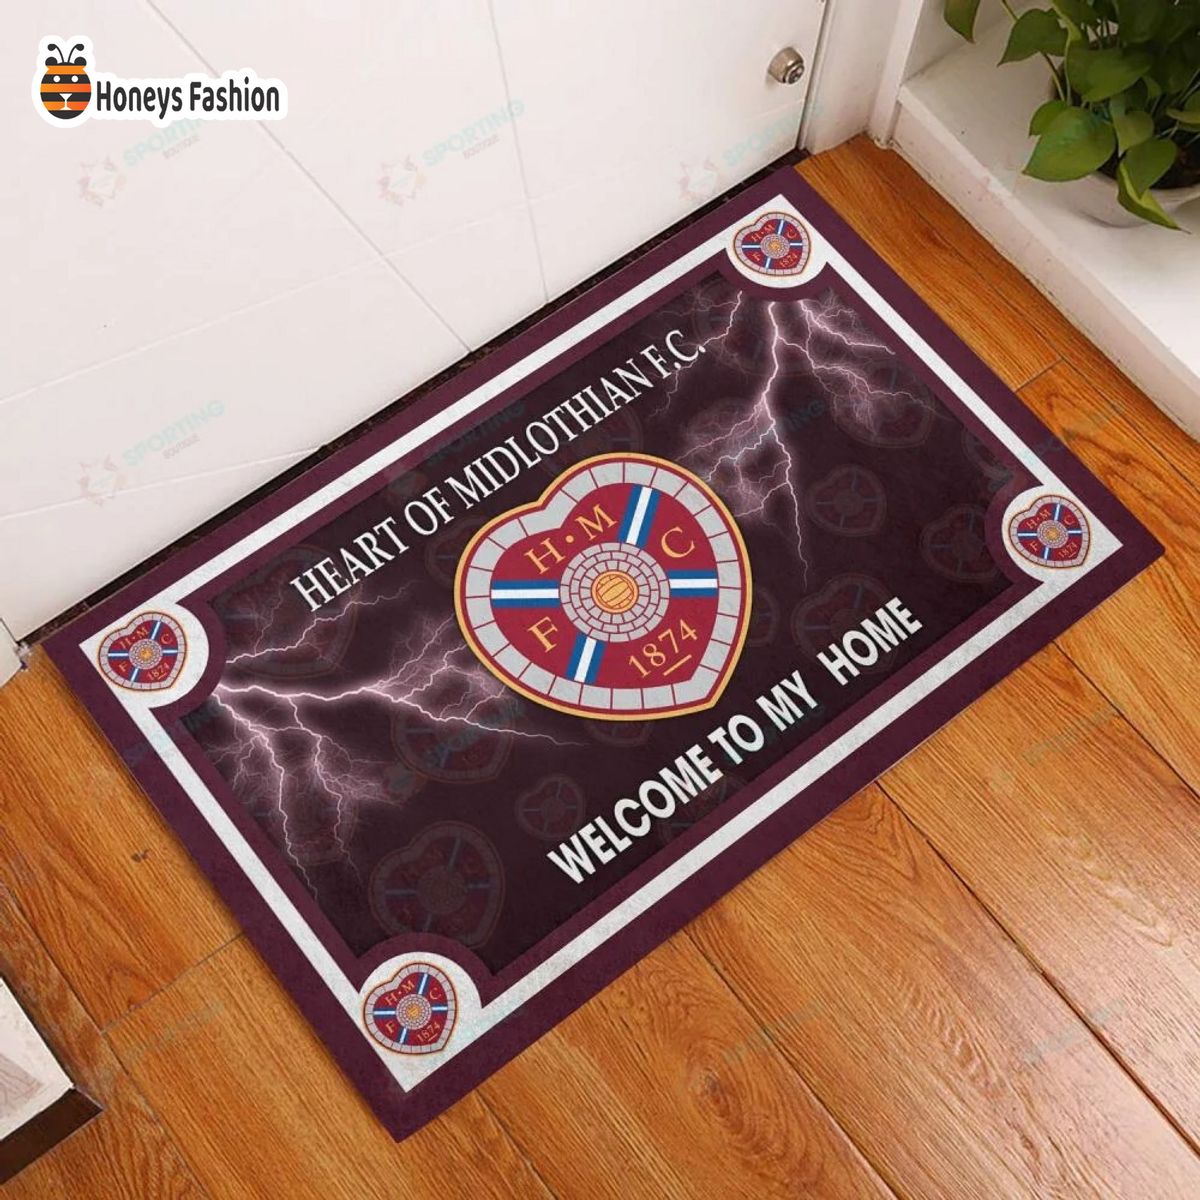 Heart of Midlothian F.C. welcome to my home doormat